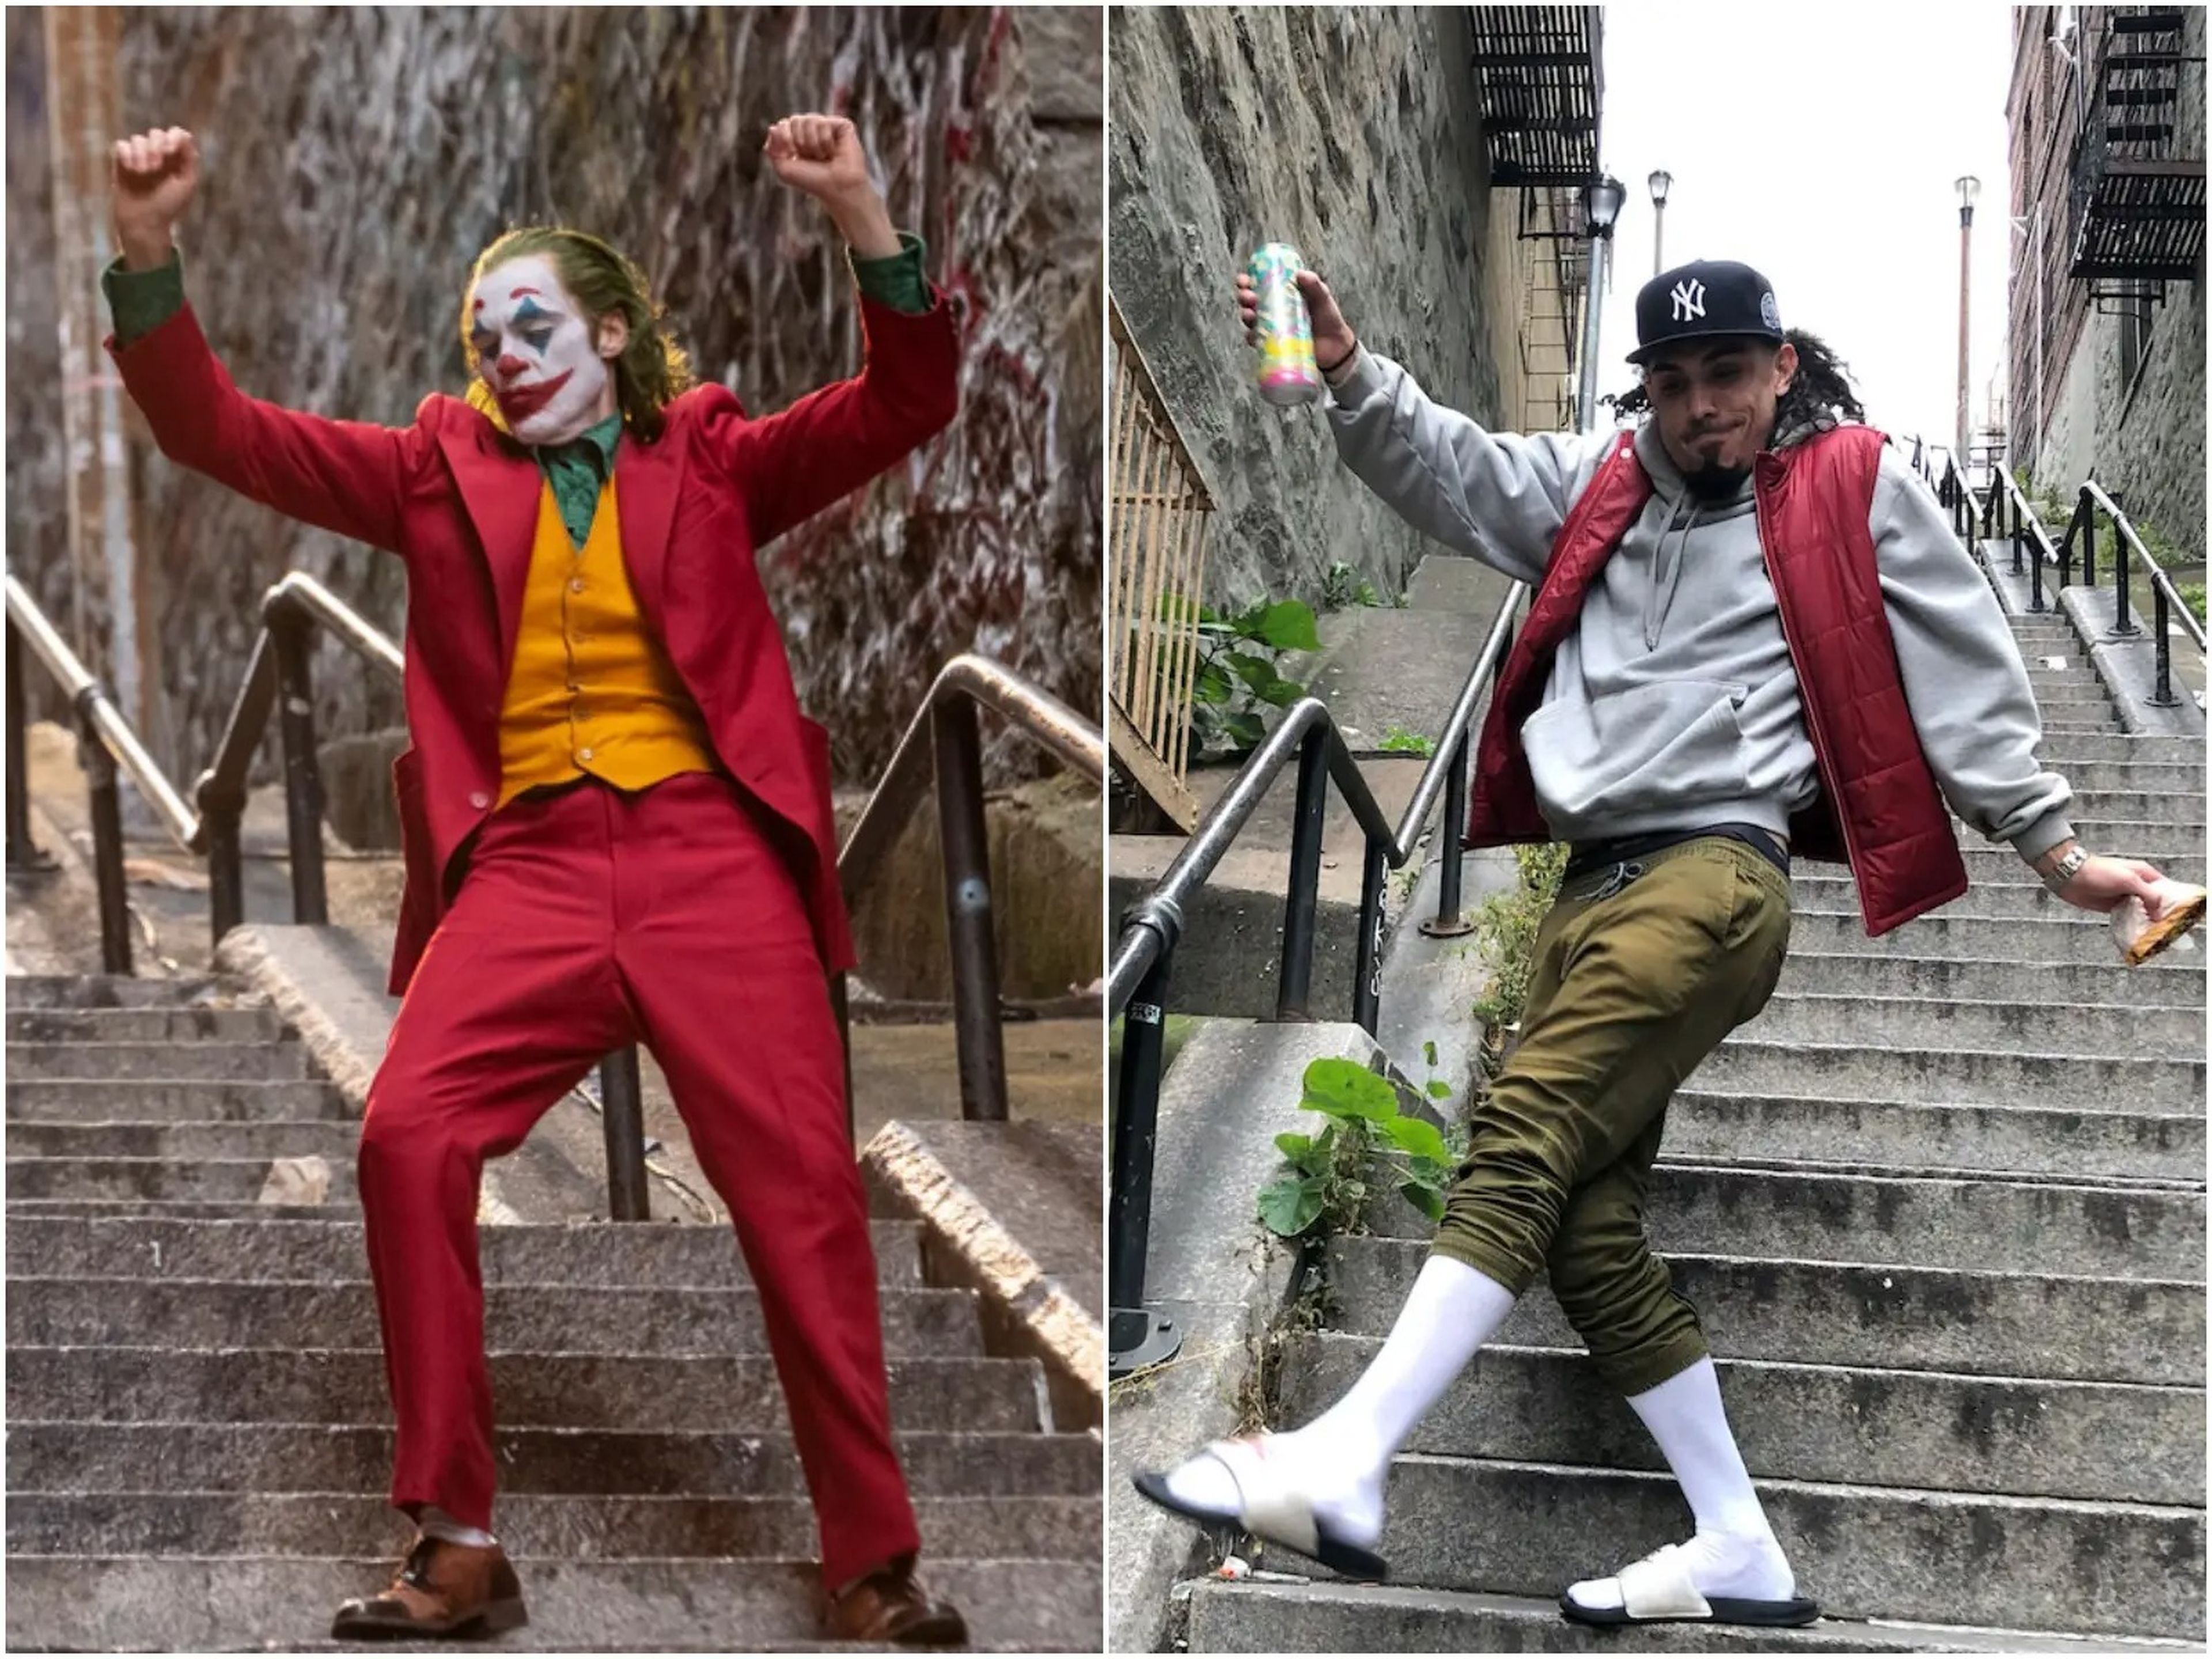 Una escena de 'Joker' a la izquierda, y un fan en la escaleras, a la derecha.